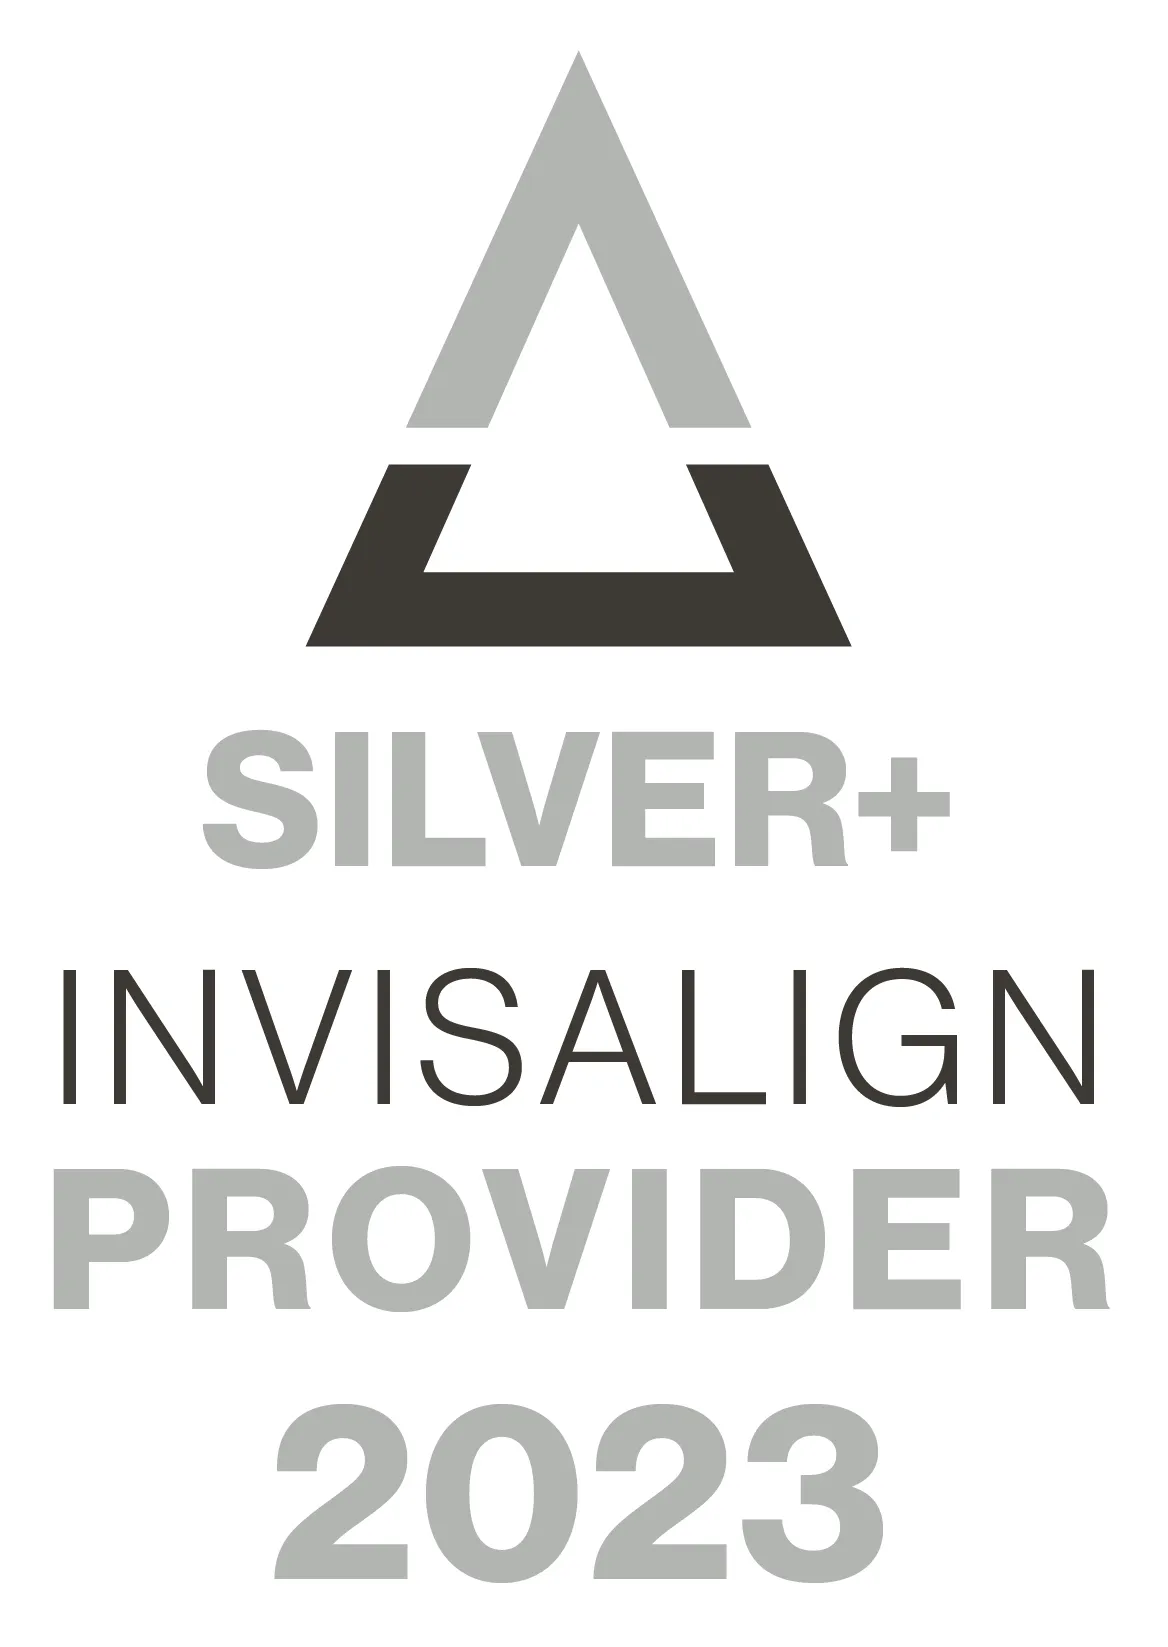 Invisilign Service Provder Logo